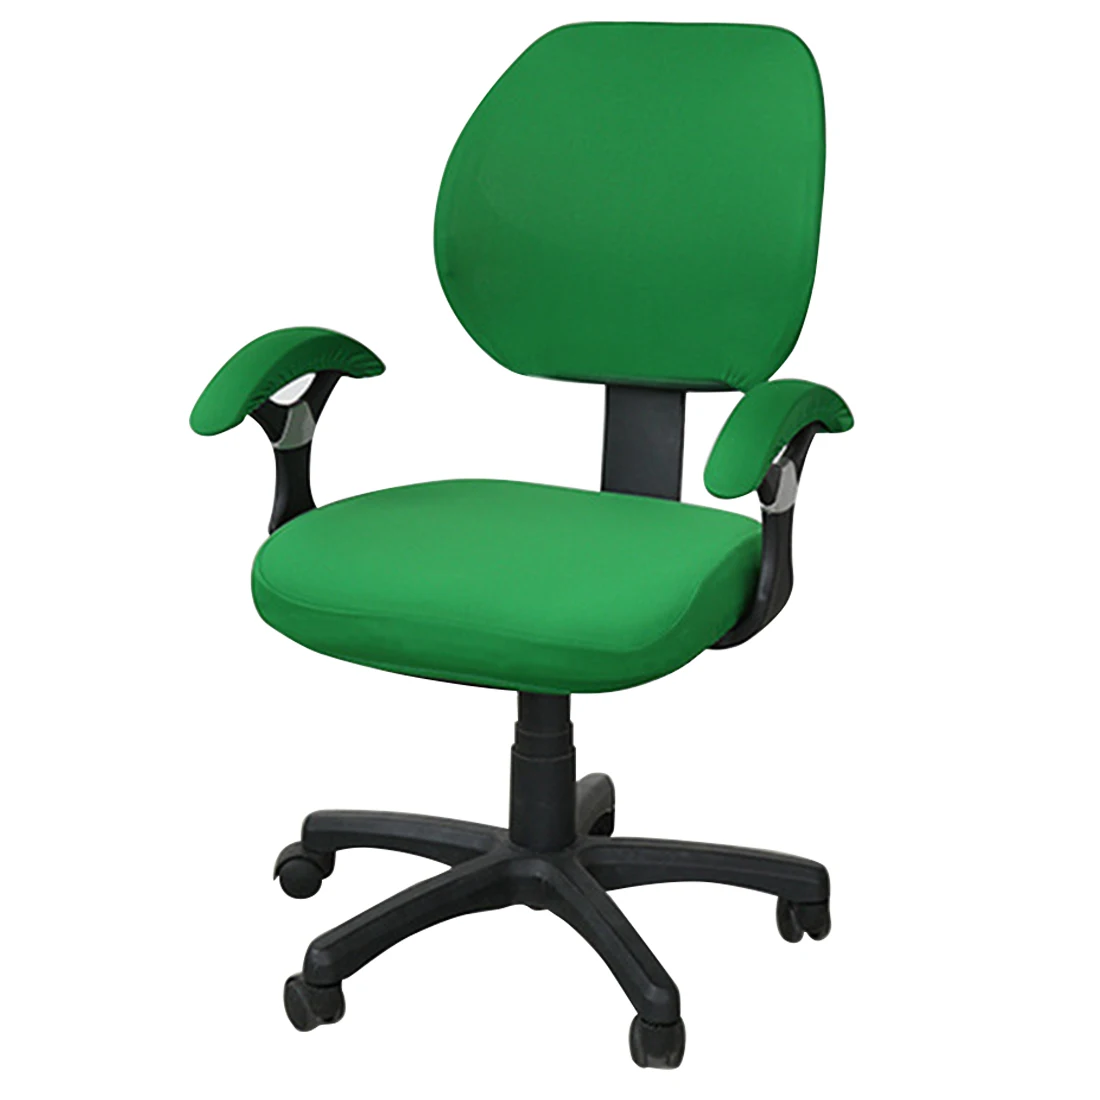 Хорошее качество покрытия для офисных стульев спандекс компьютерное кресло подлокотник чехол с цветочным принтом Съемный вращающийся стрейч чехлы на стулья - Цвет: green